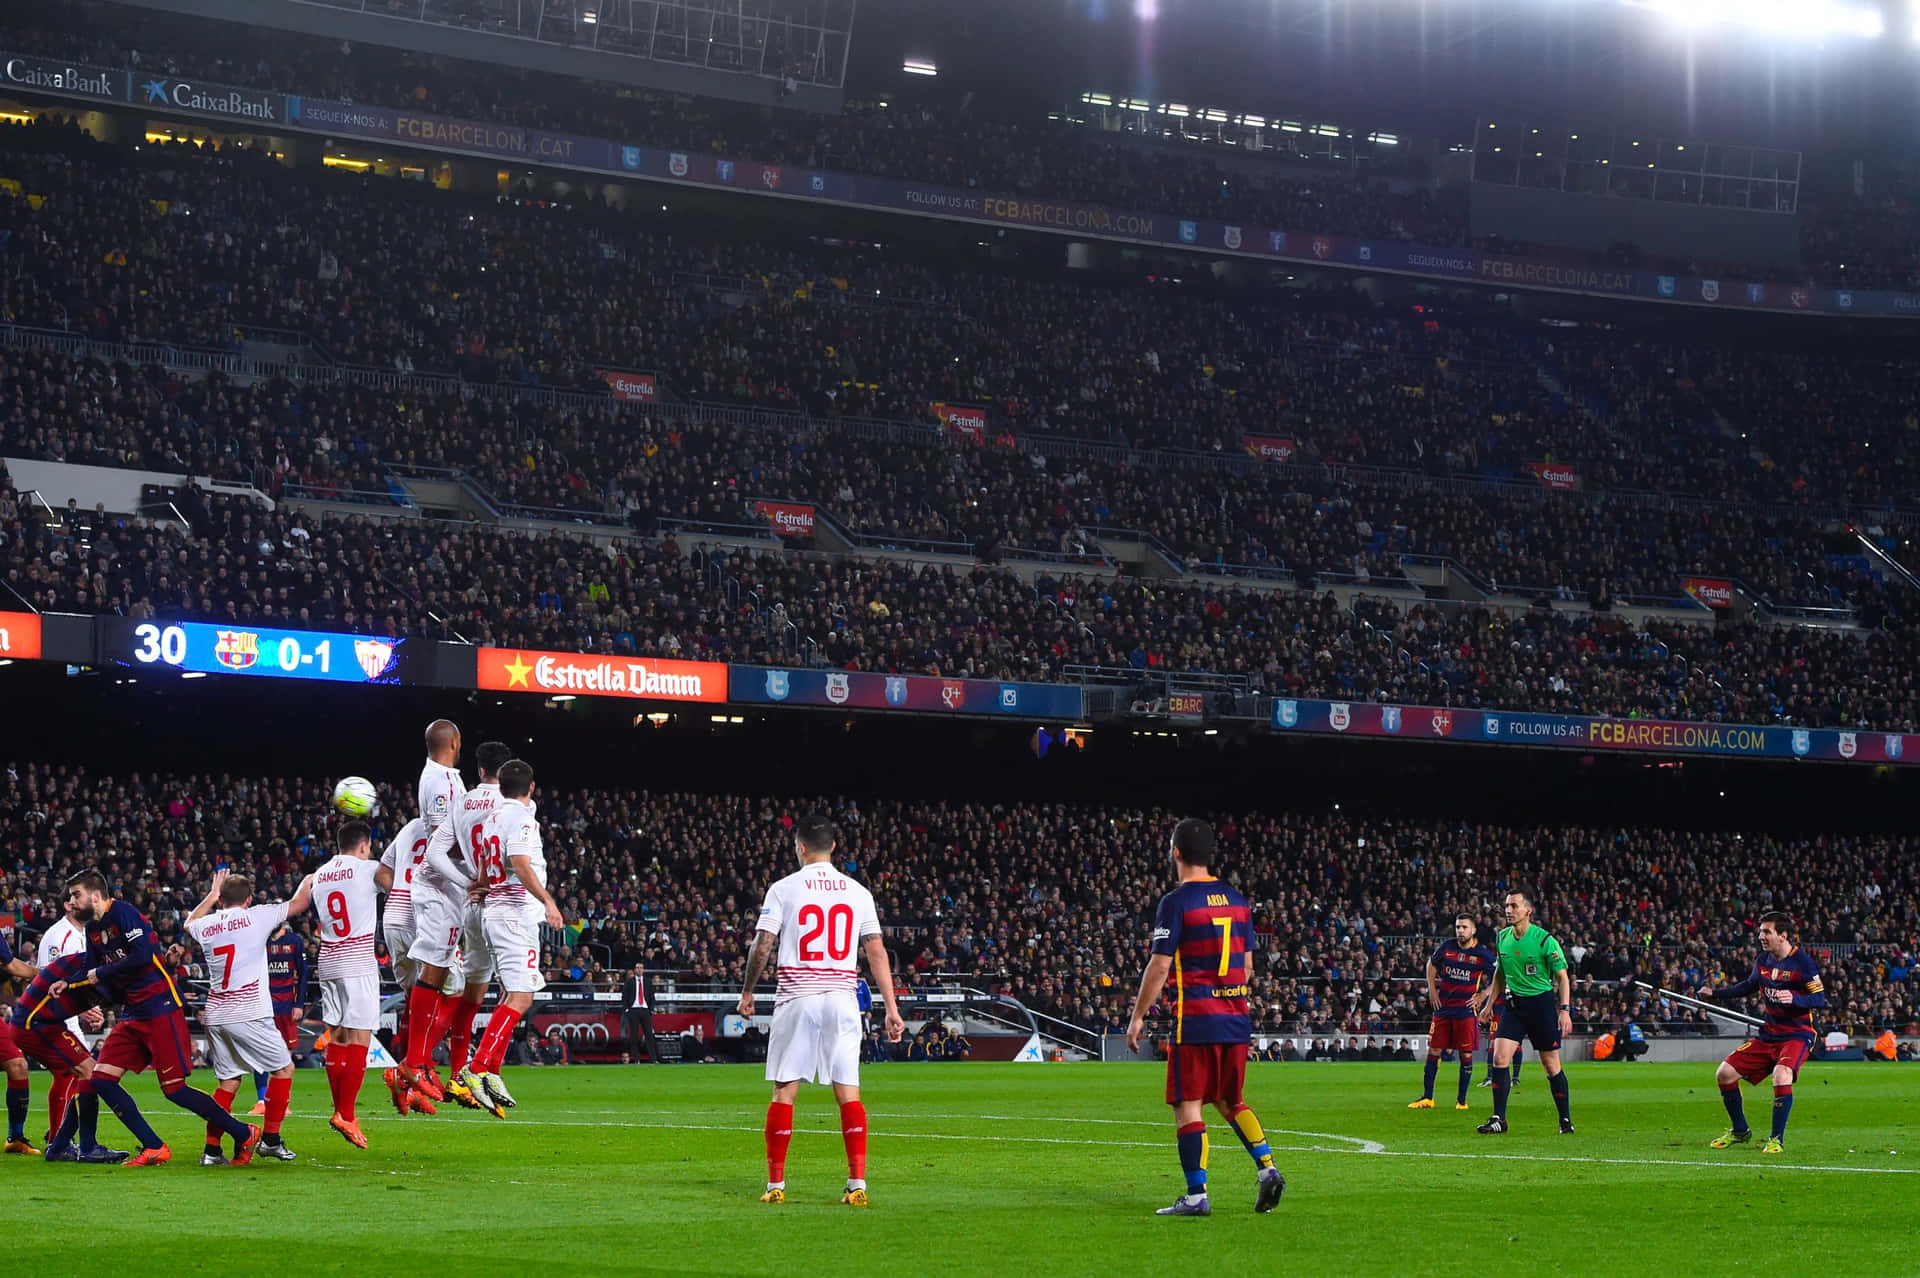 Messi Free Kick Stadium Atmosphere Wallpaper